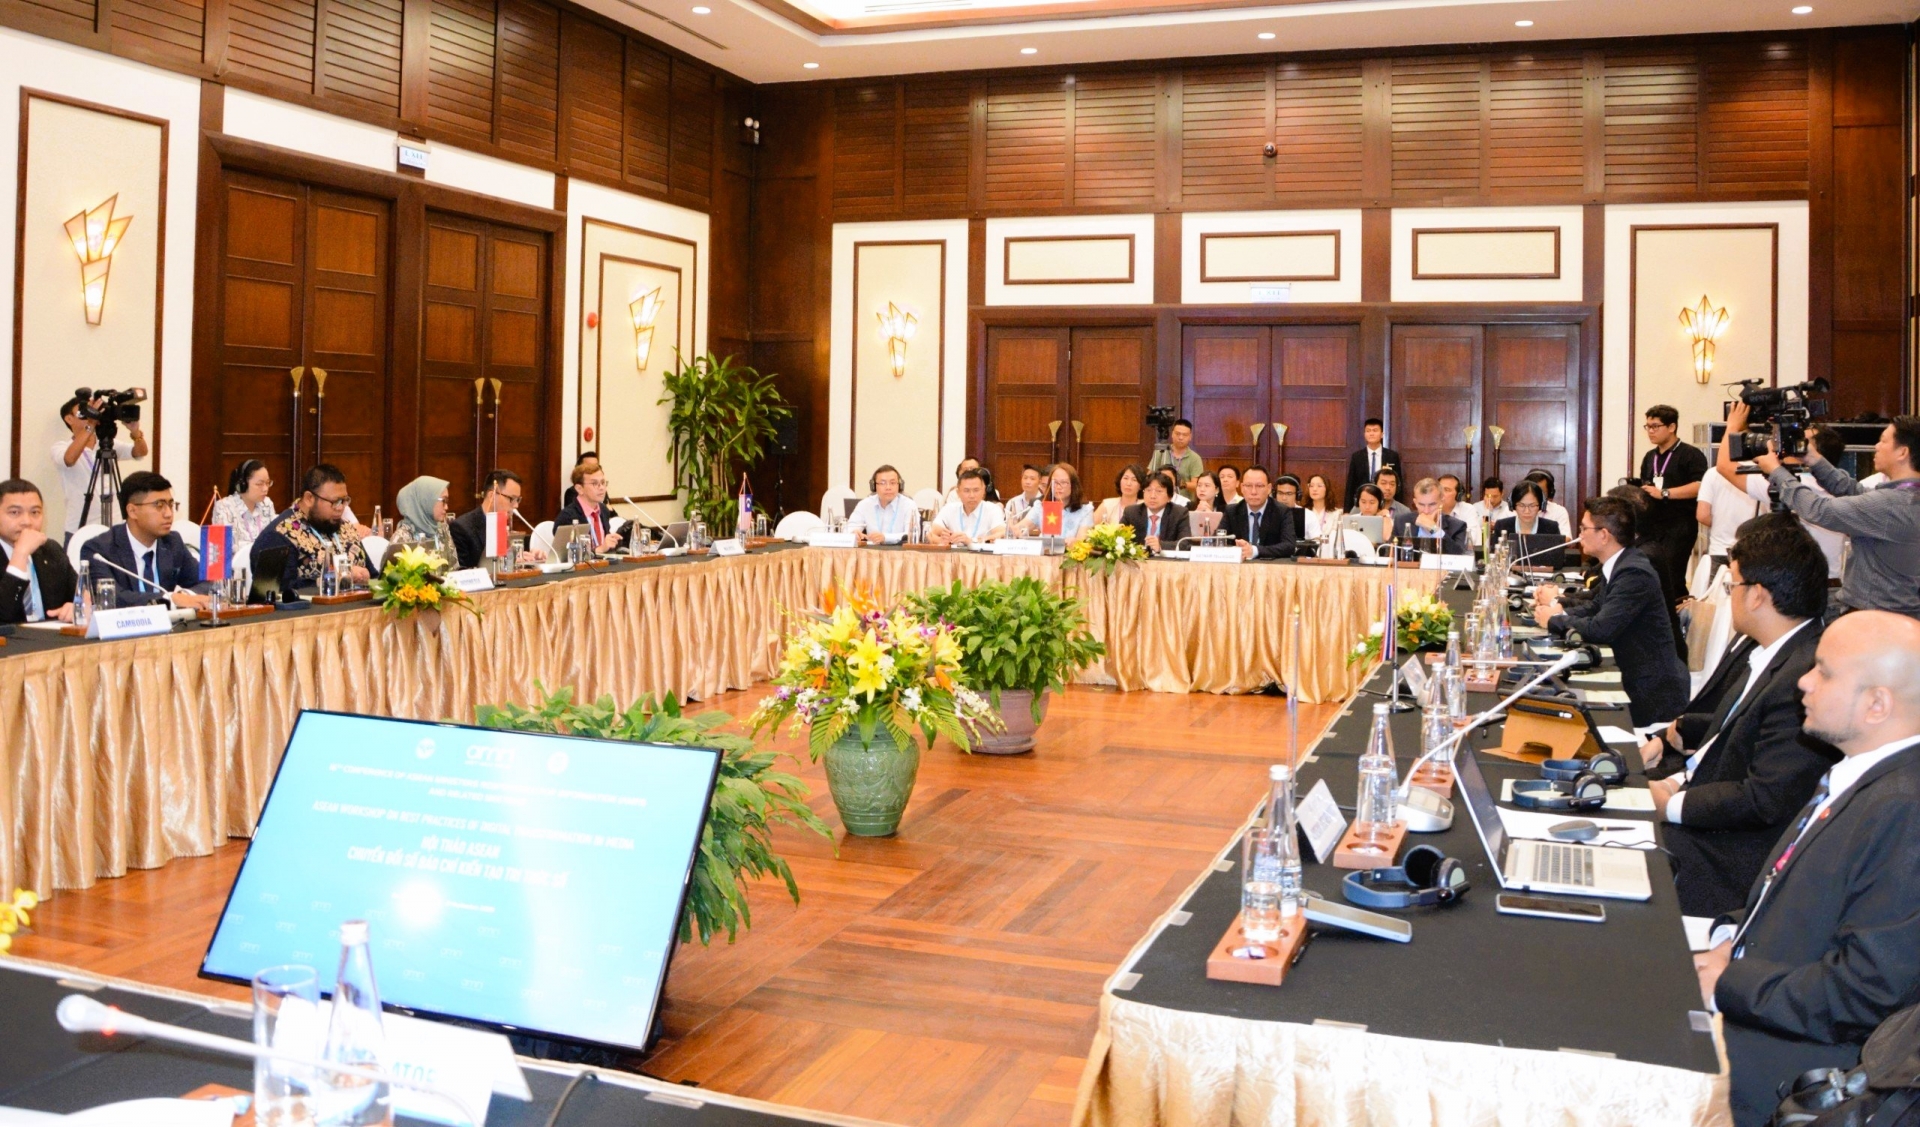 Ngày 21/09, tại TP Đà Nẵng đã diễn ra Hội thảo “ASEAN chuyển đổi số báo chí kiến tạo tri thức số”. Đây là lần đầu tiên các nước thành viên ASEAN cùng nhau chia sẻ, thảo luận về chủ đề Chuyển đổi số trong truyền thông.